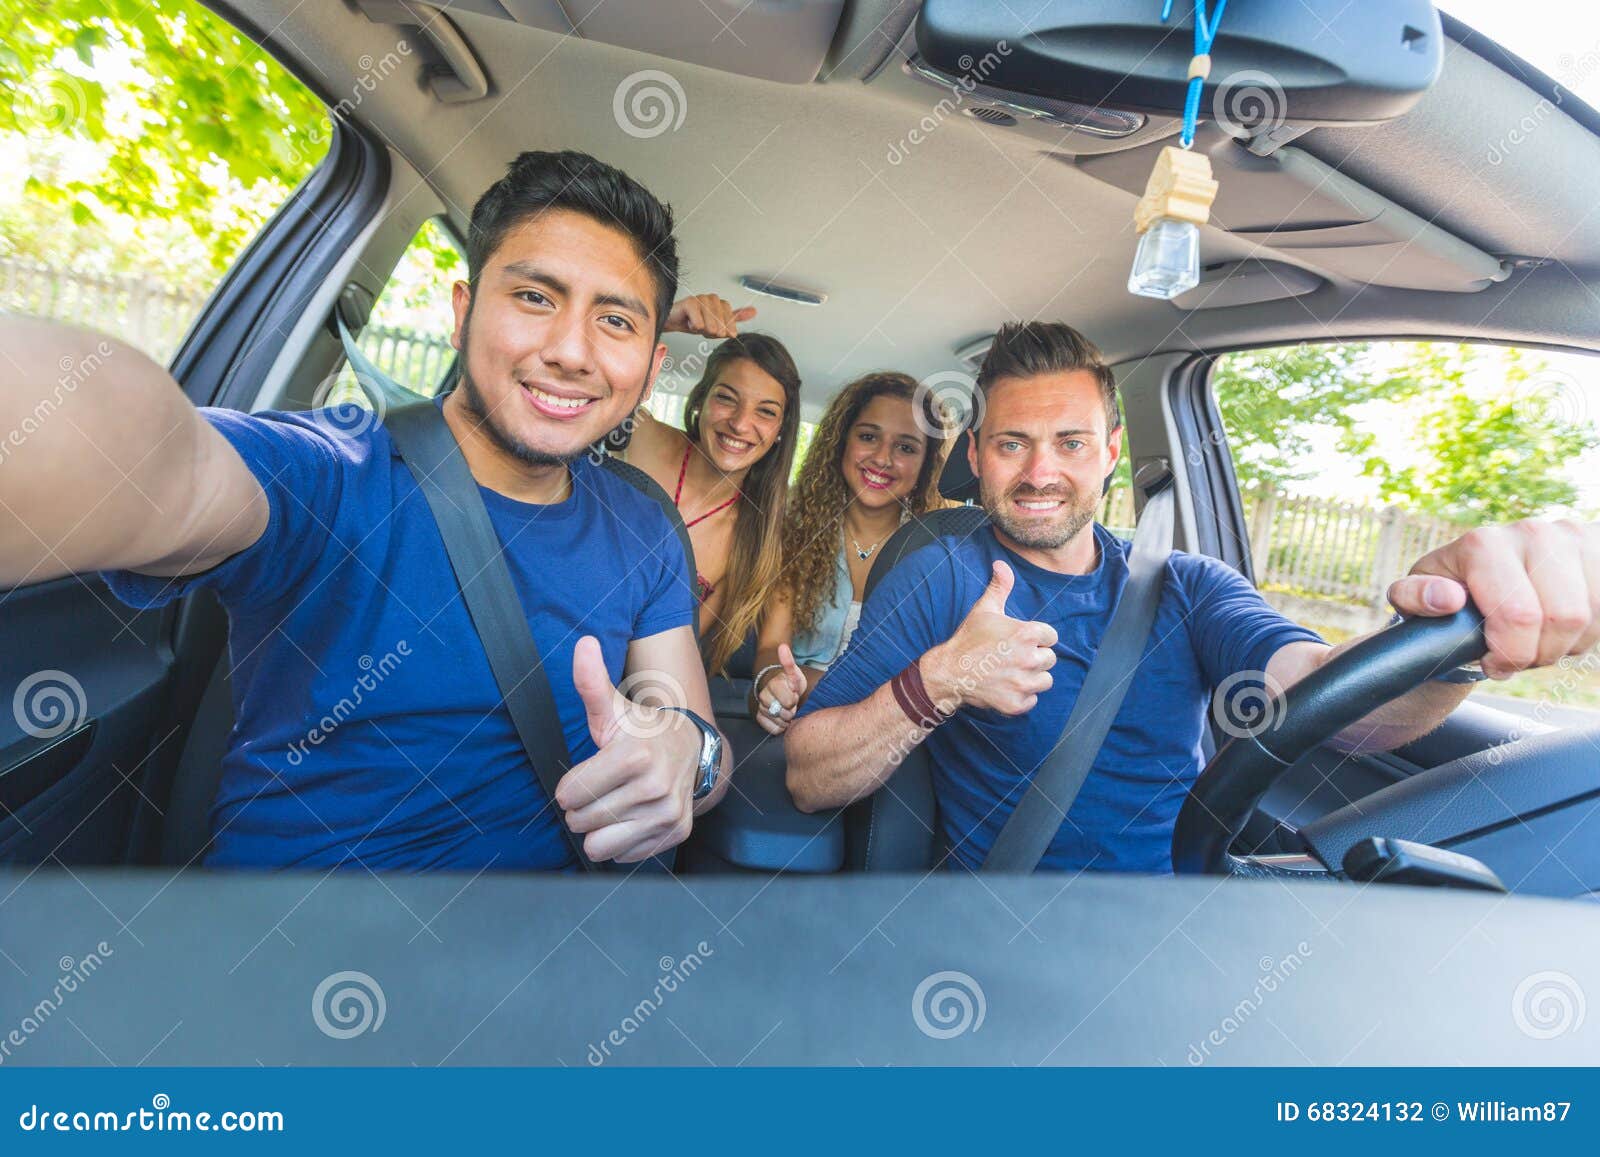 passenger car selfies